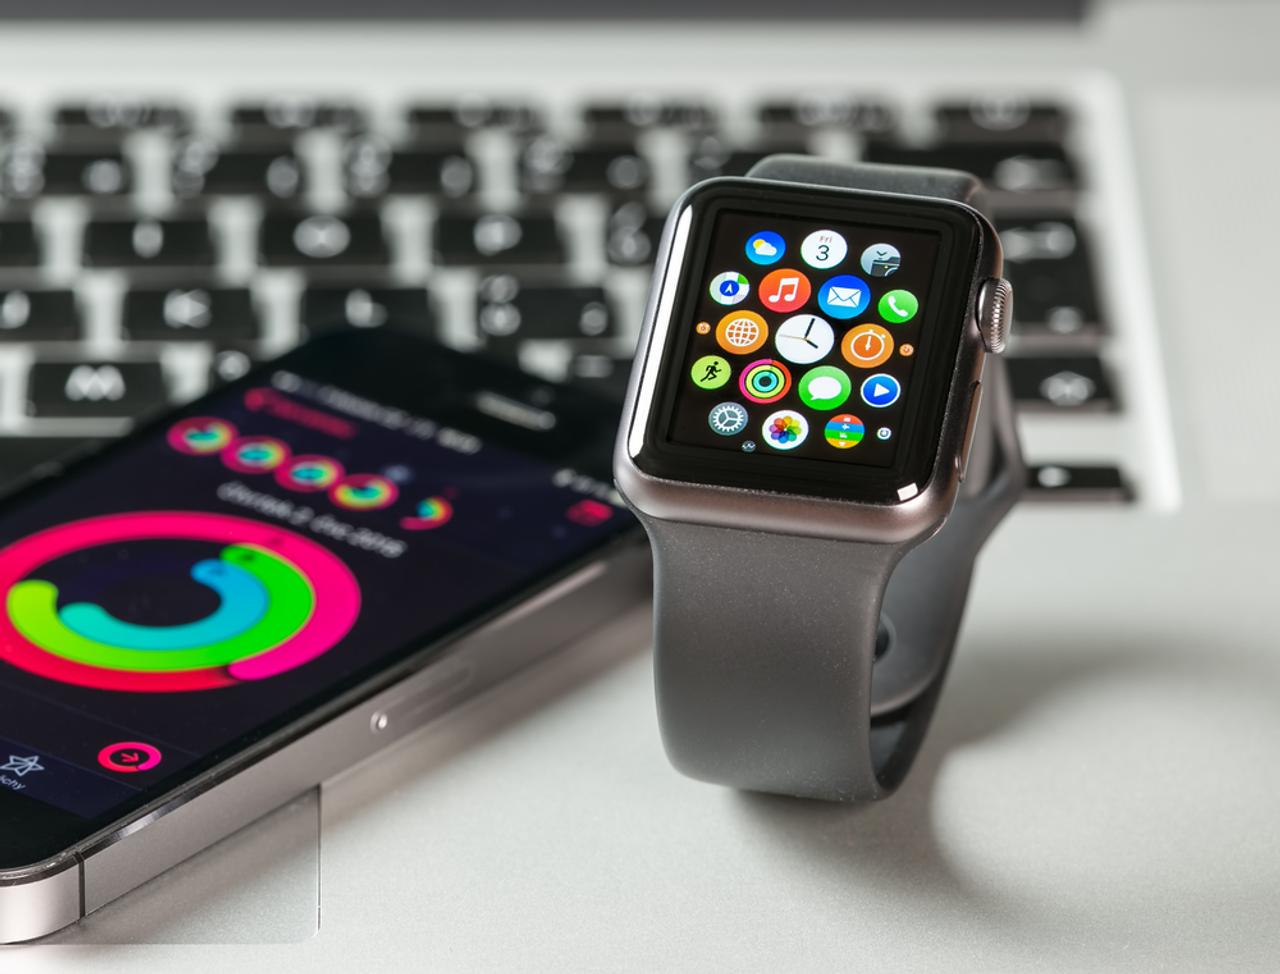 ｢Apple Watch Series 4｣で、ついにWatchのデザインが変更か。そして、iPad miniは刷新なしか…